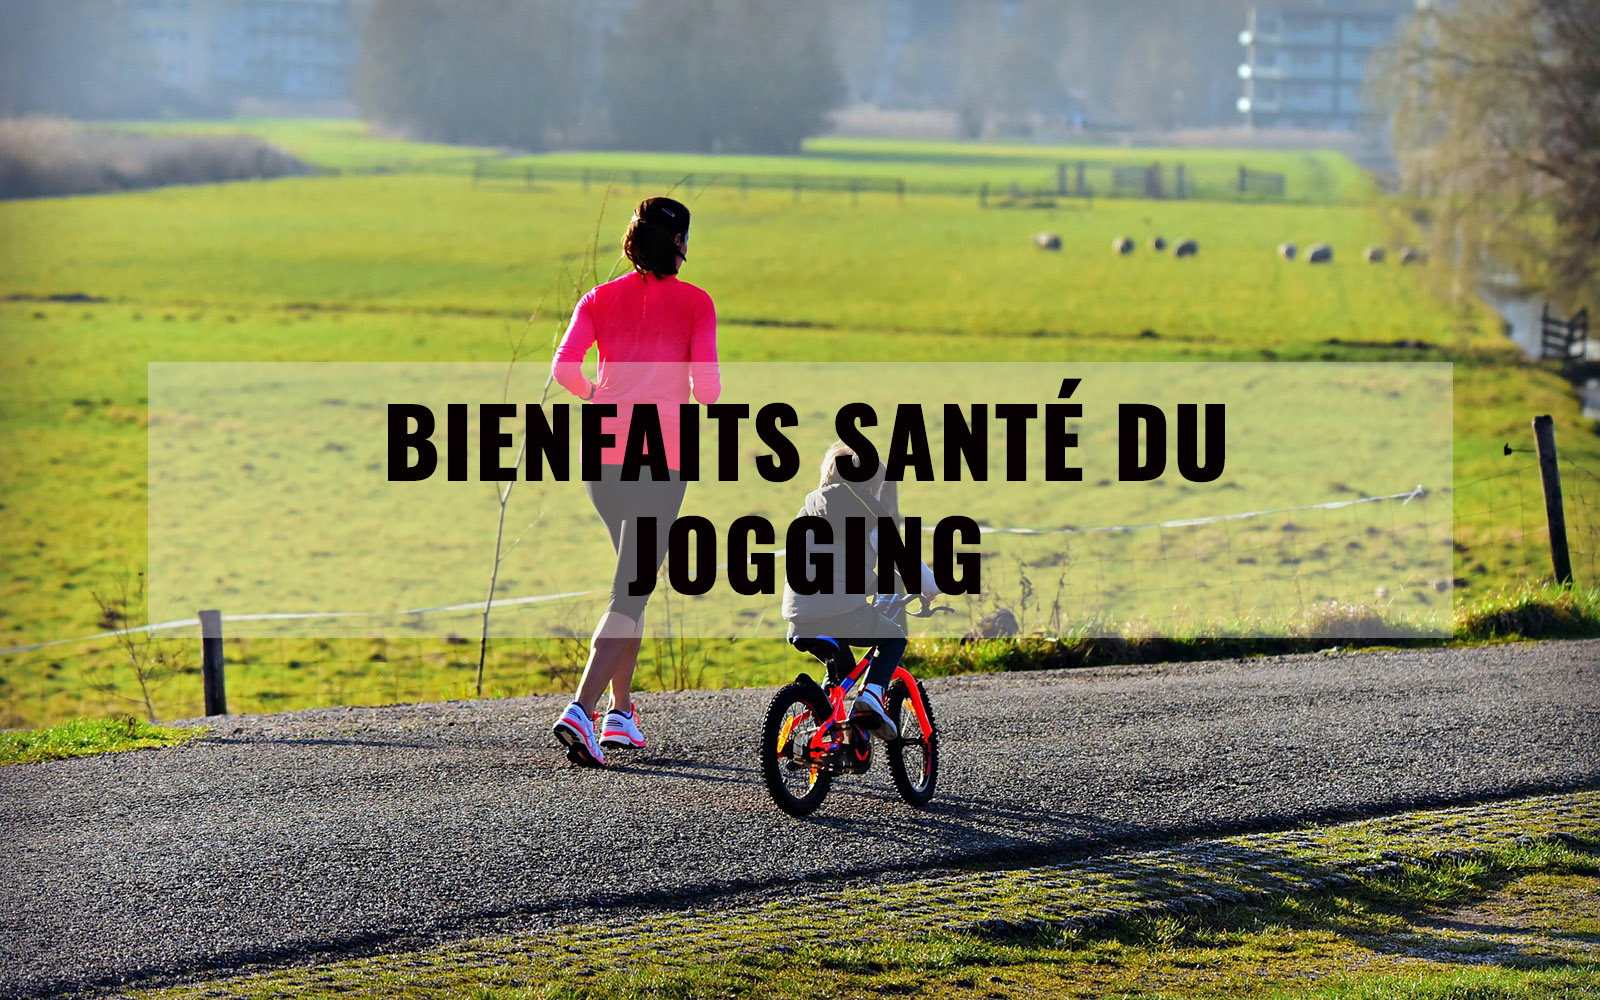 Bienfaits santé du jogging